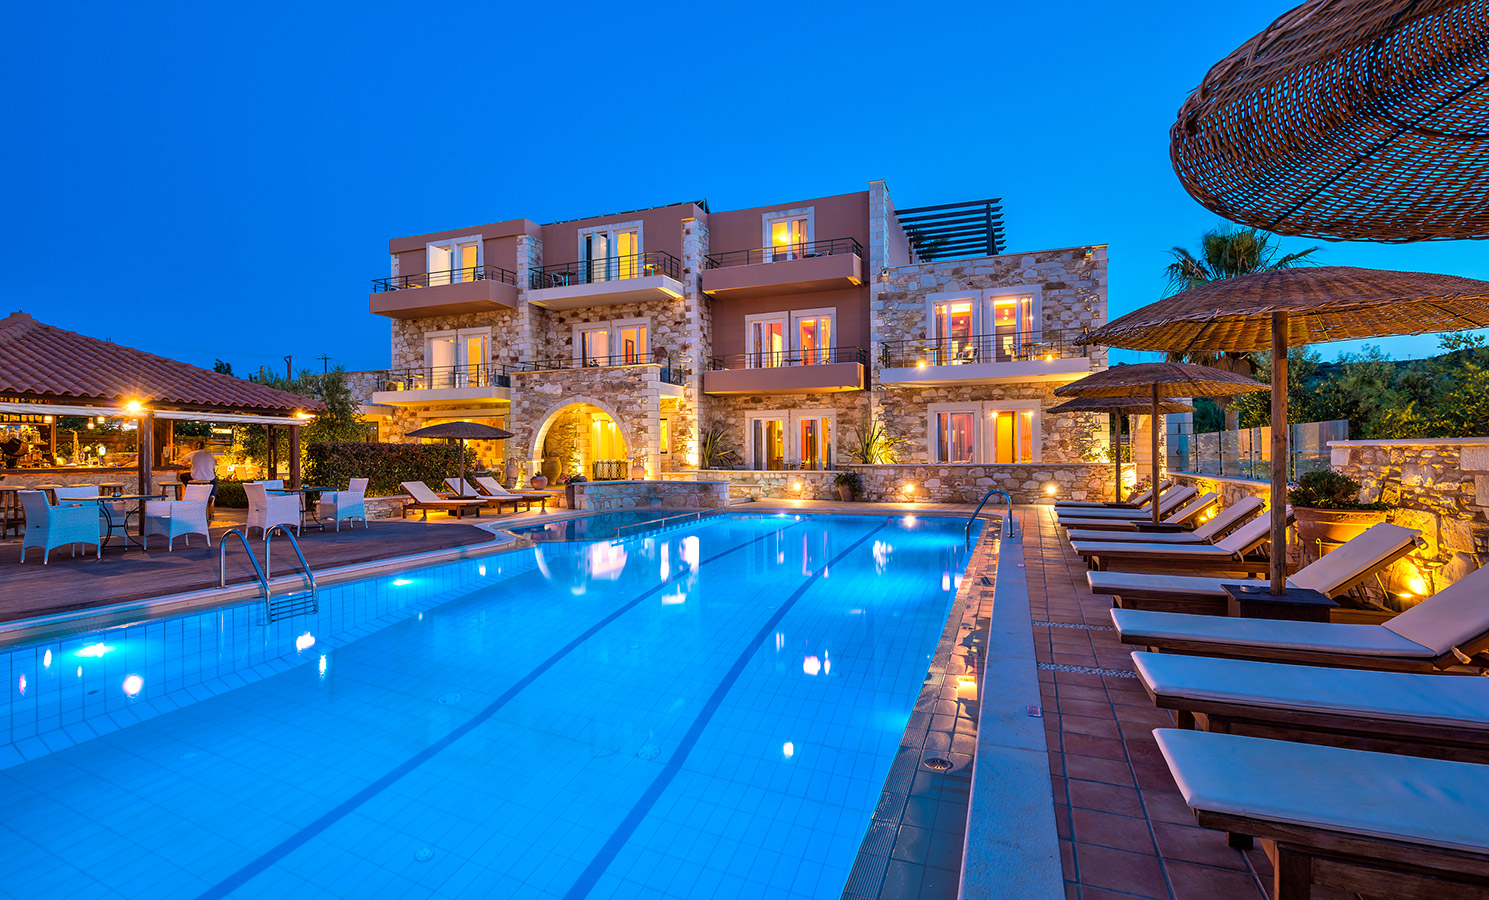 Mistral Hotel Singles Resorts - Singles In Crete